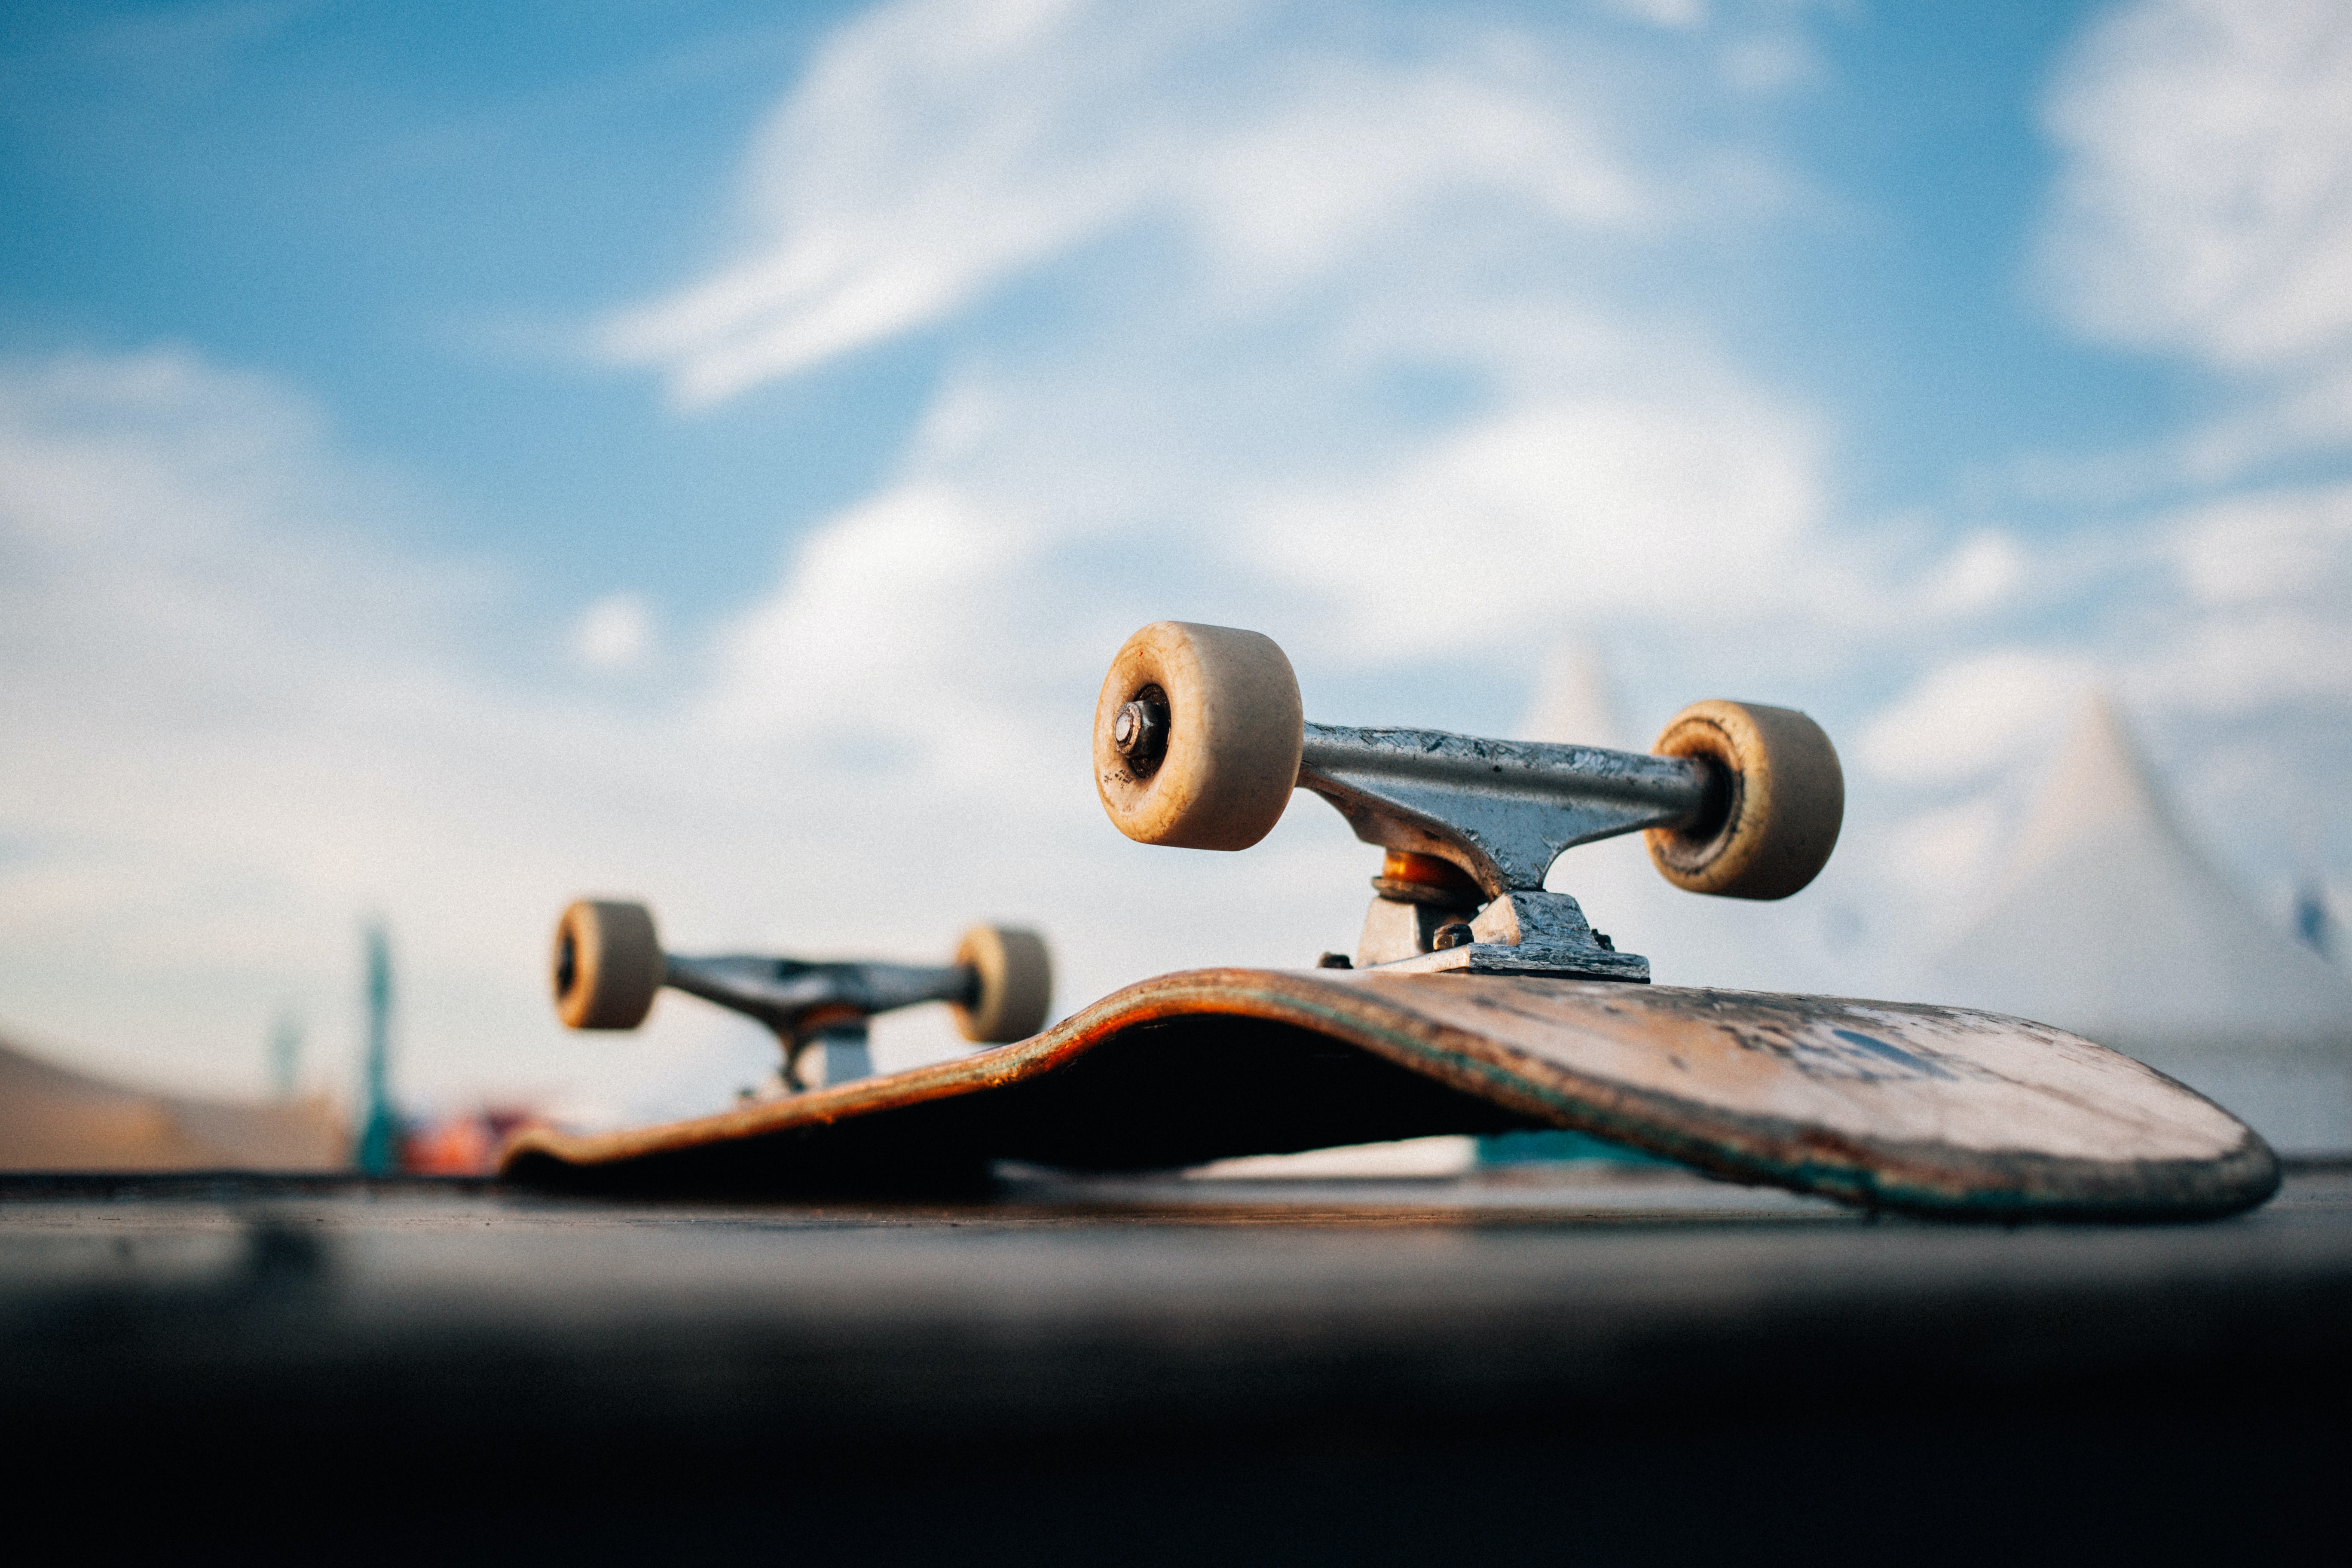 Jak vybrat skateboardový komplet?